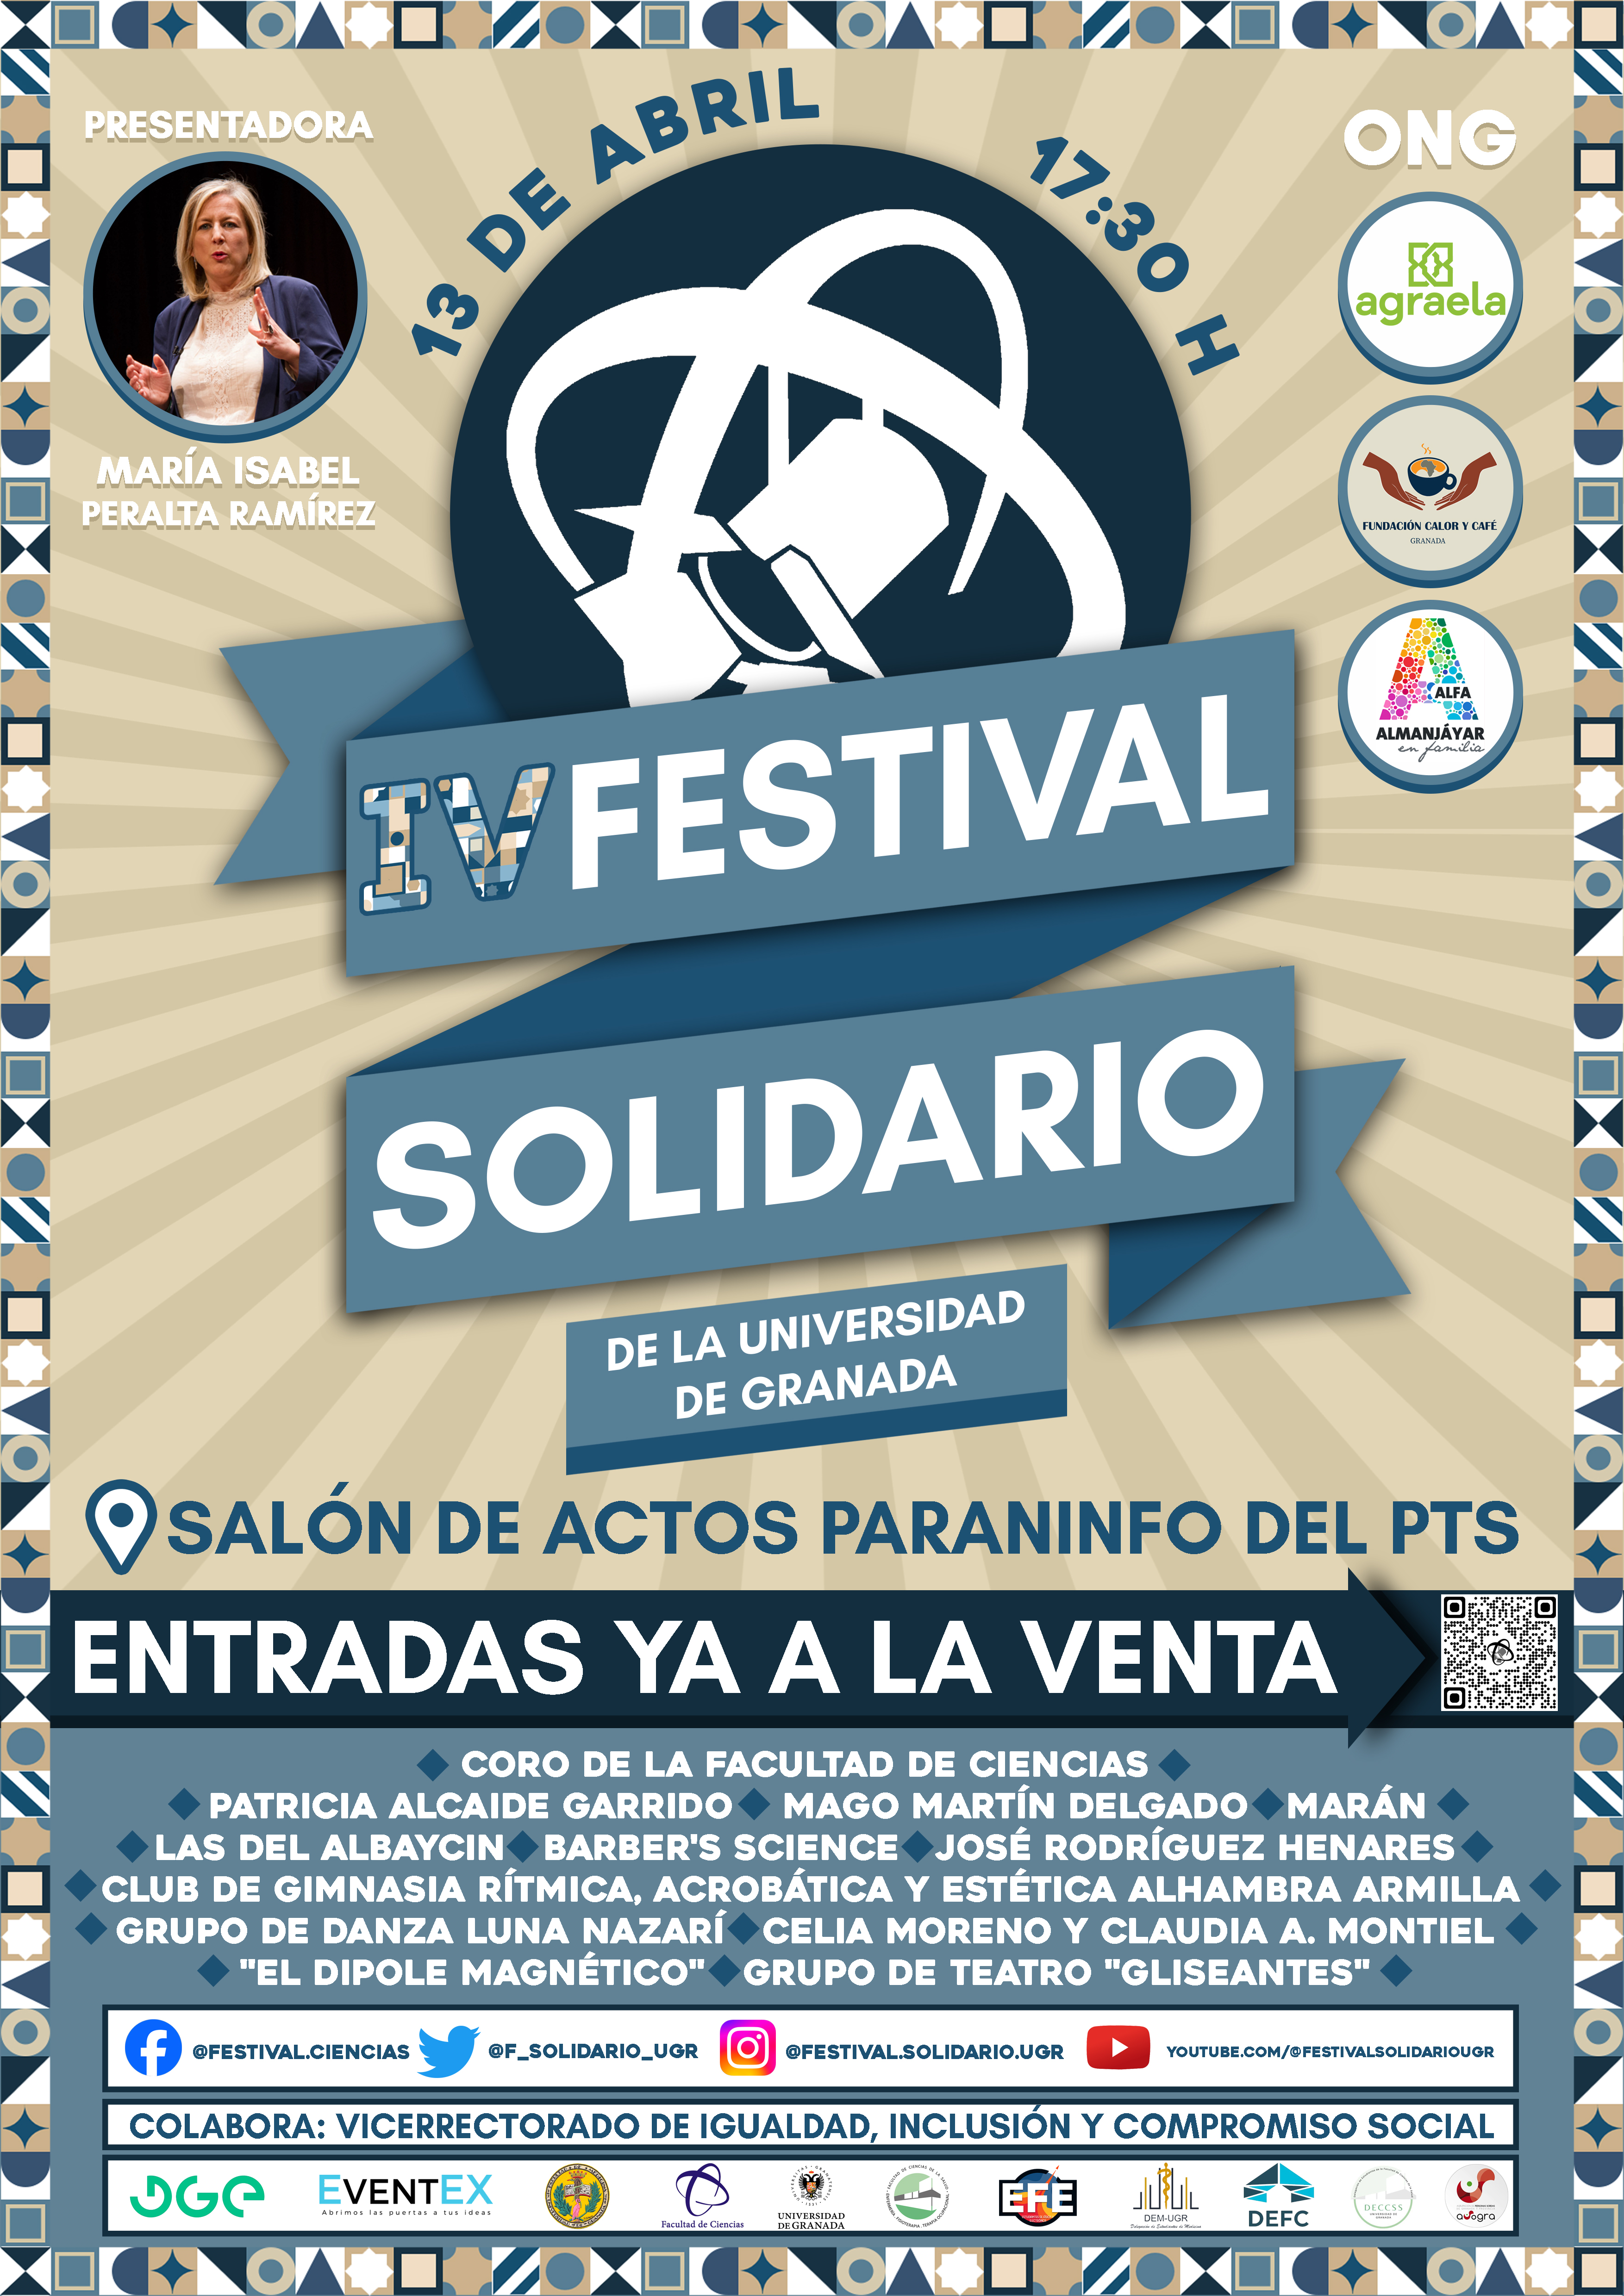 Cartel del IV Festival Solidario con la información del día y hora, lugar, las ONG, los colaboradores y la compra de entradas